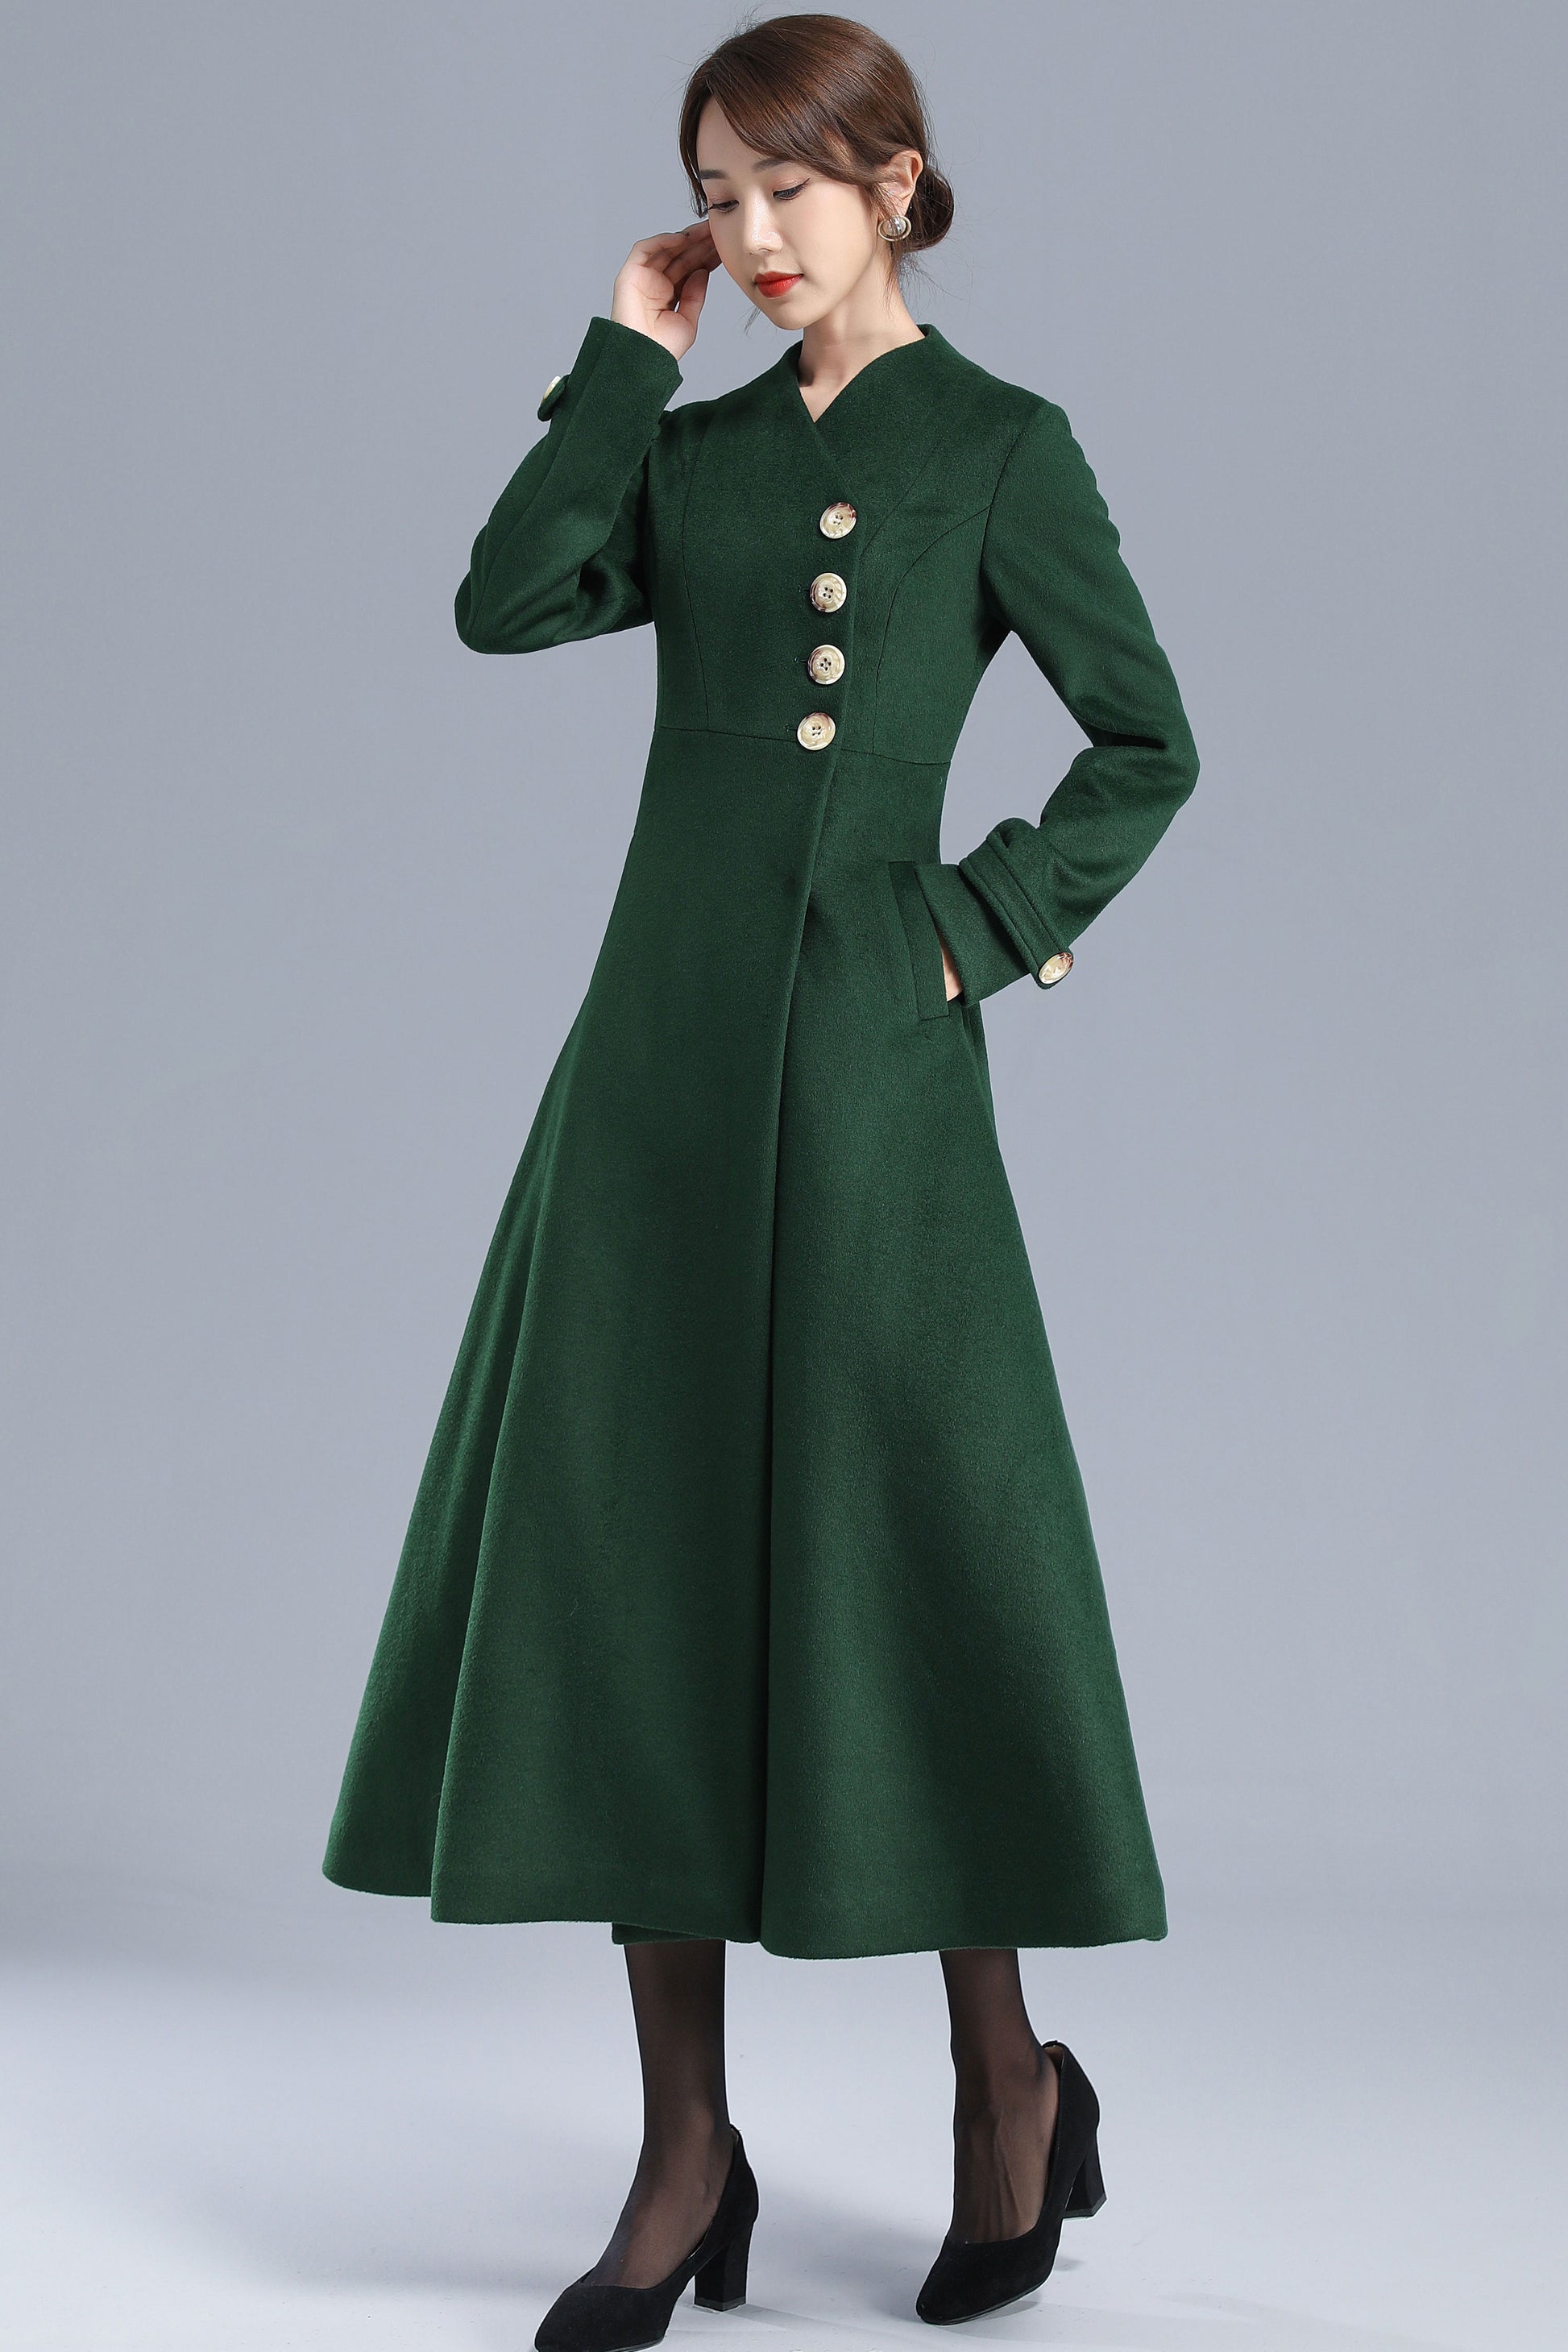 Xisimei Women's sexy coat women's faux wool thin coat trench